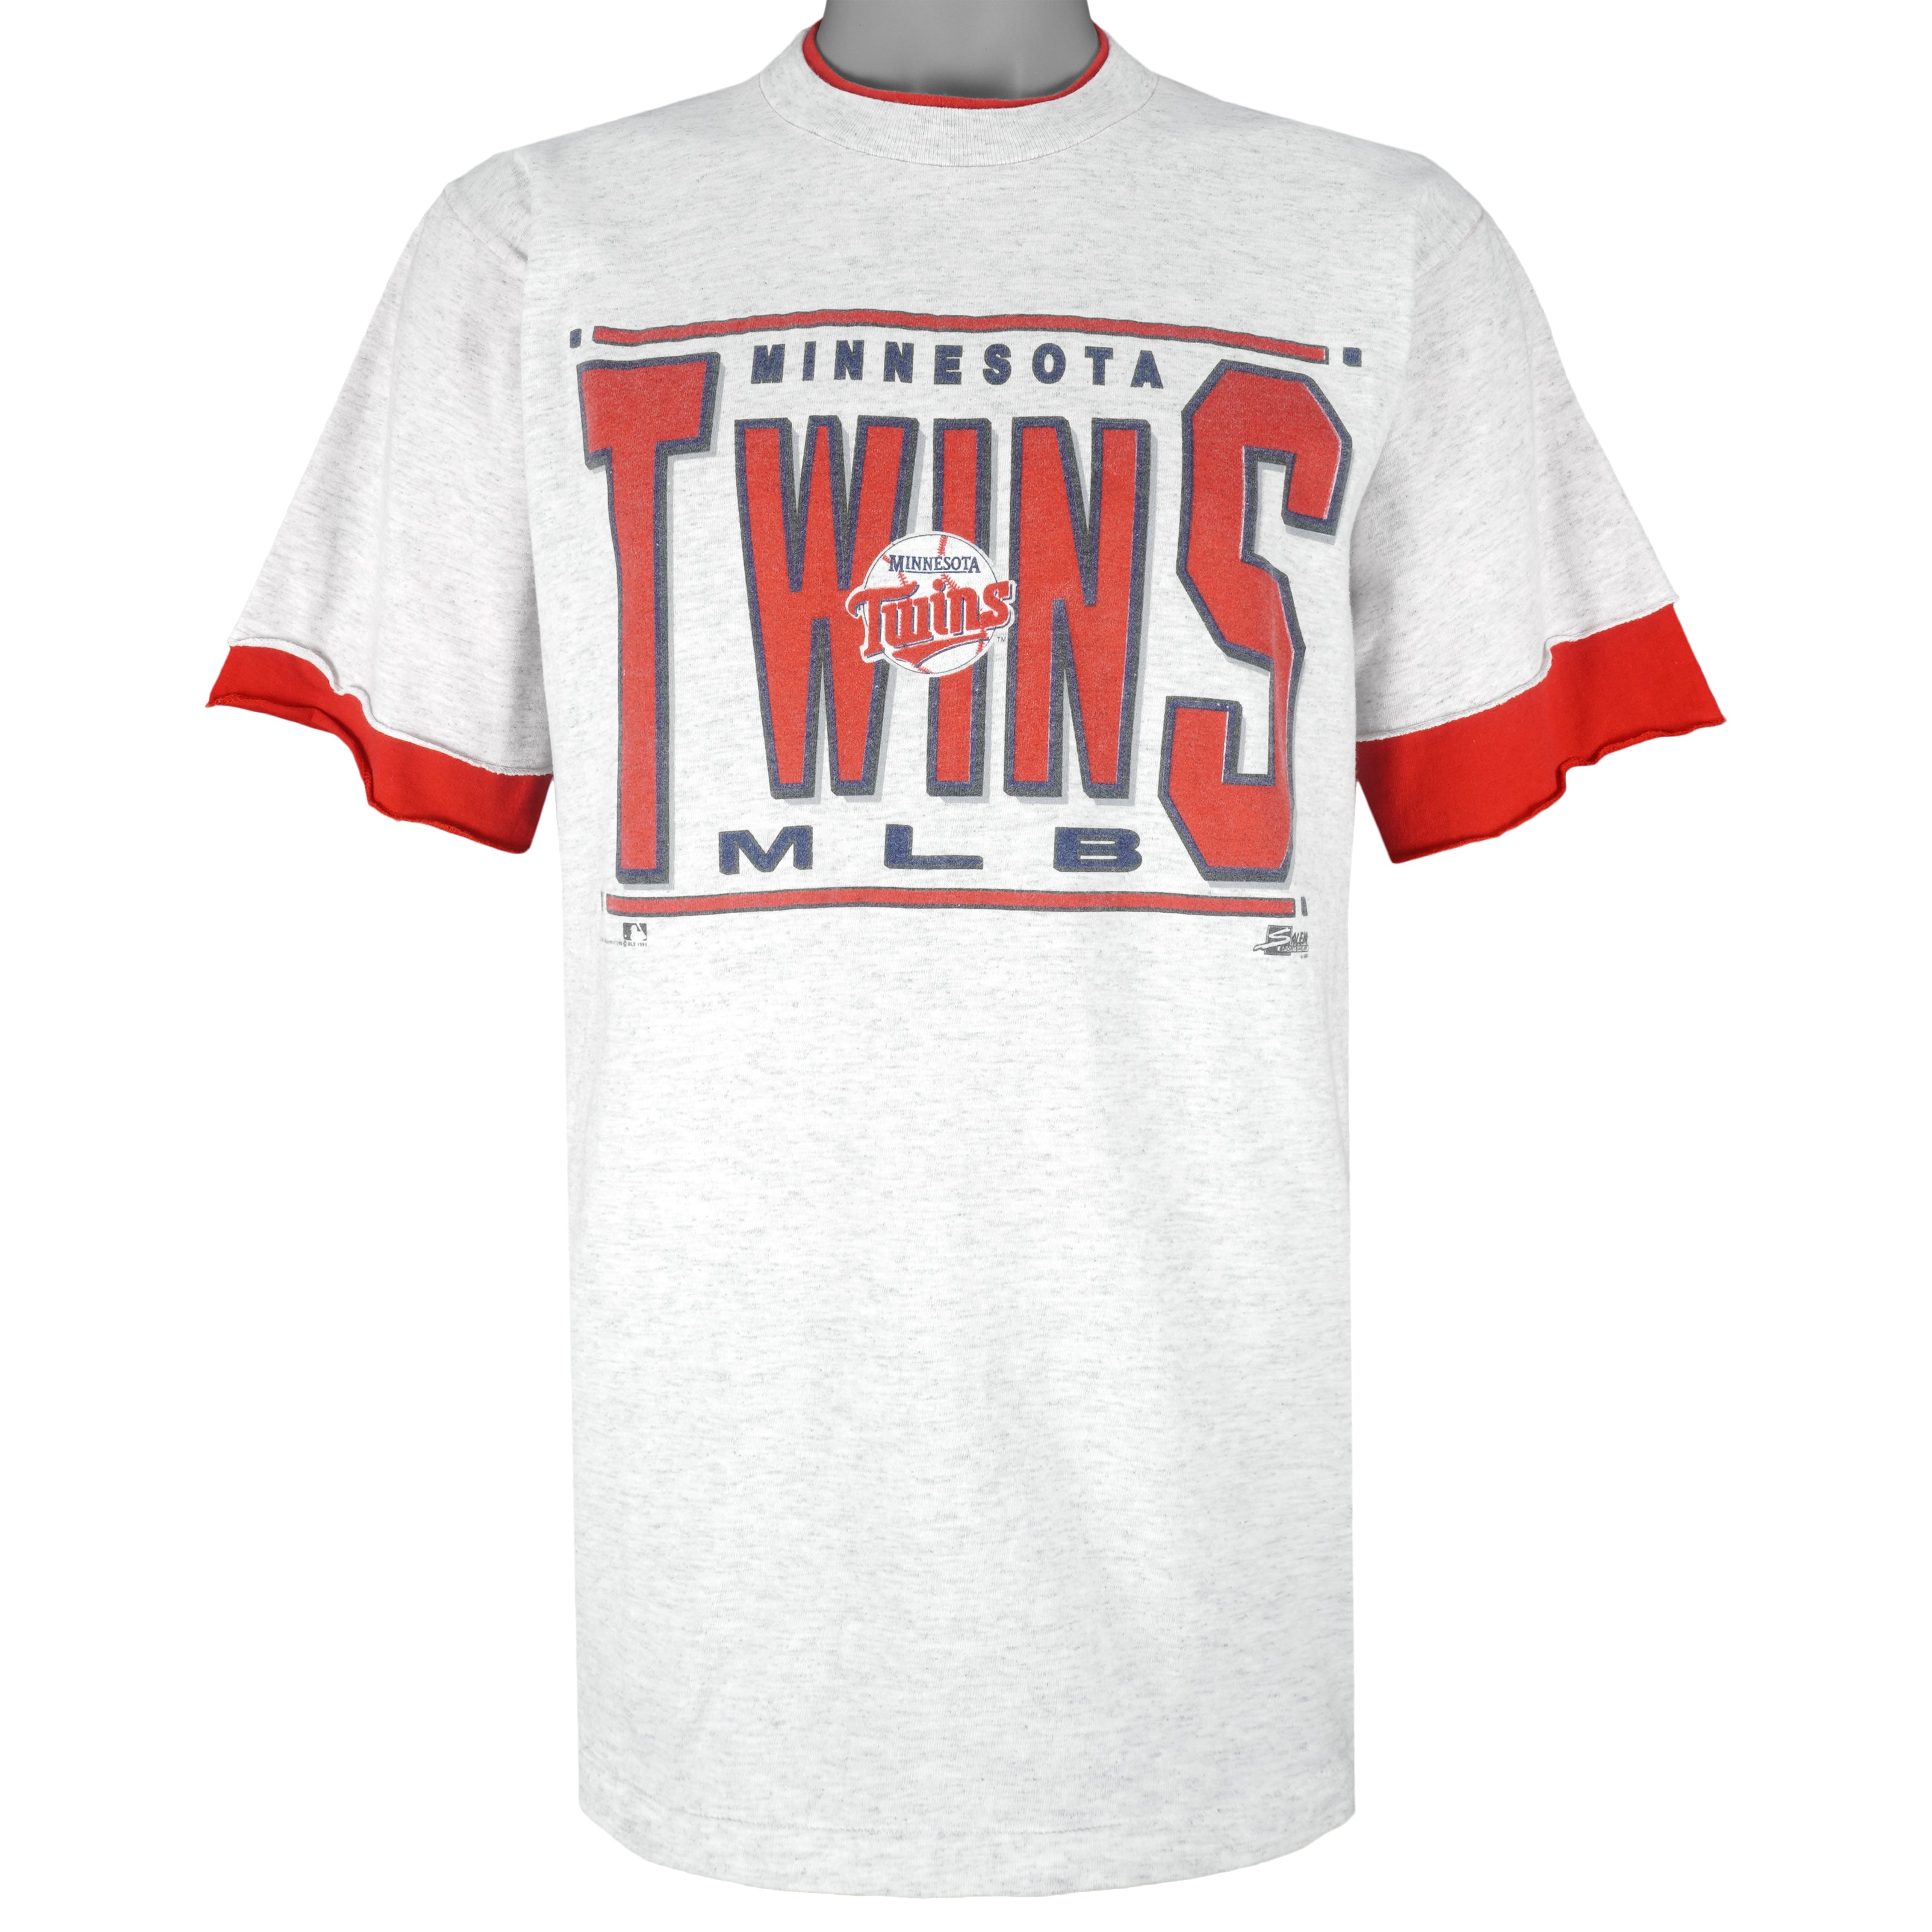 Vintage 90s Minnesota Twins MLB Baseball Crewneck 1990s Tee Top Shirt Large